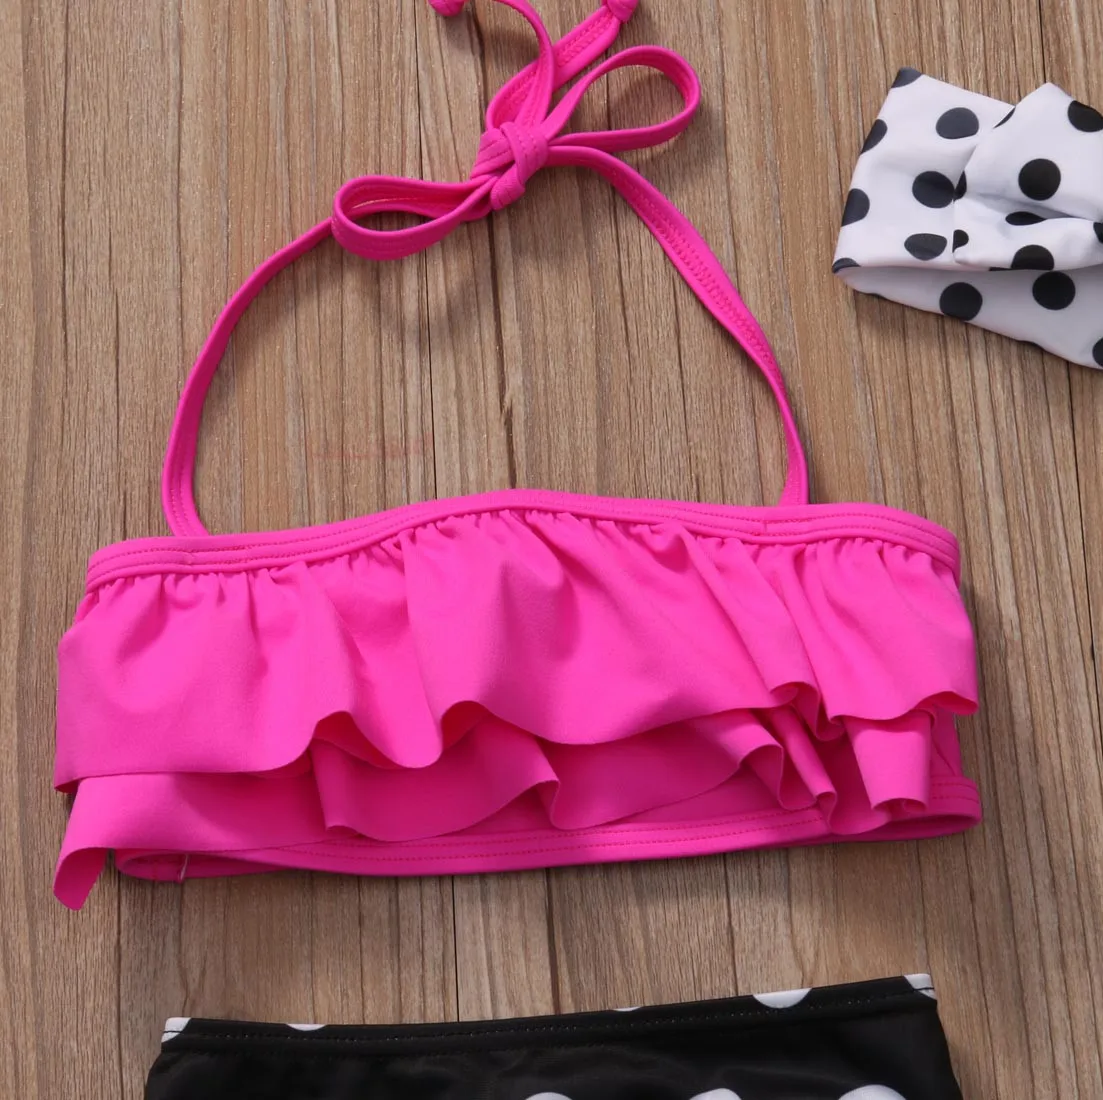 Летний комплект бикини в горошек для маленьких девочек, купальный костюм, купальный костюм, одежда для плавания, 3 предмета